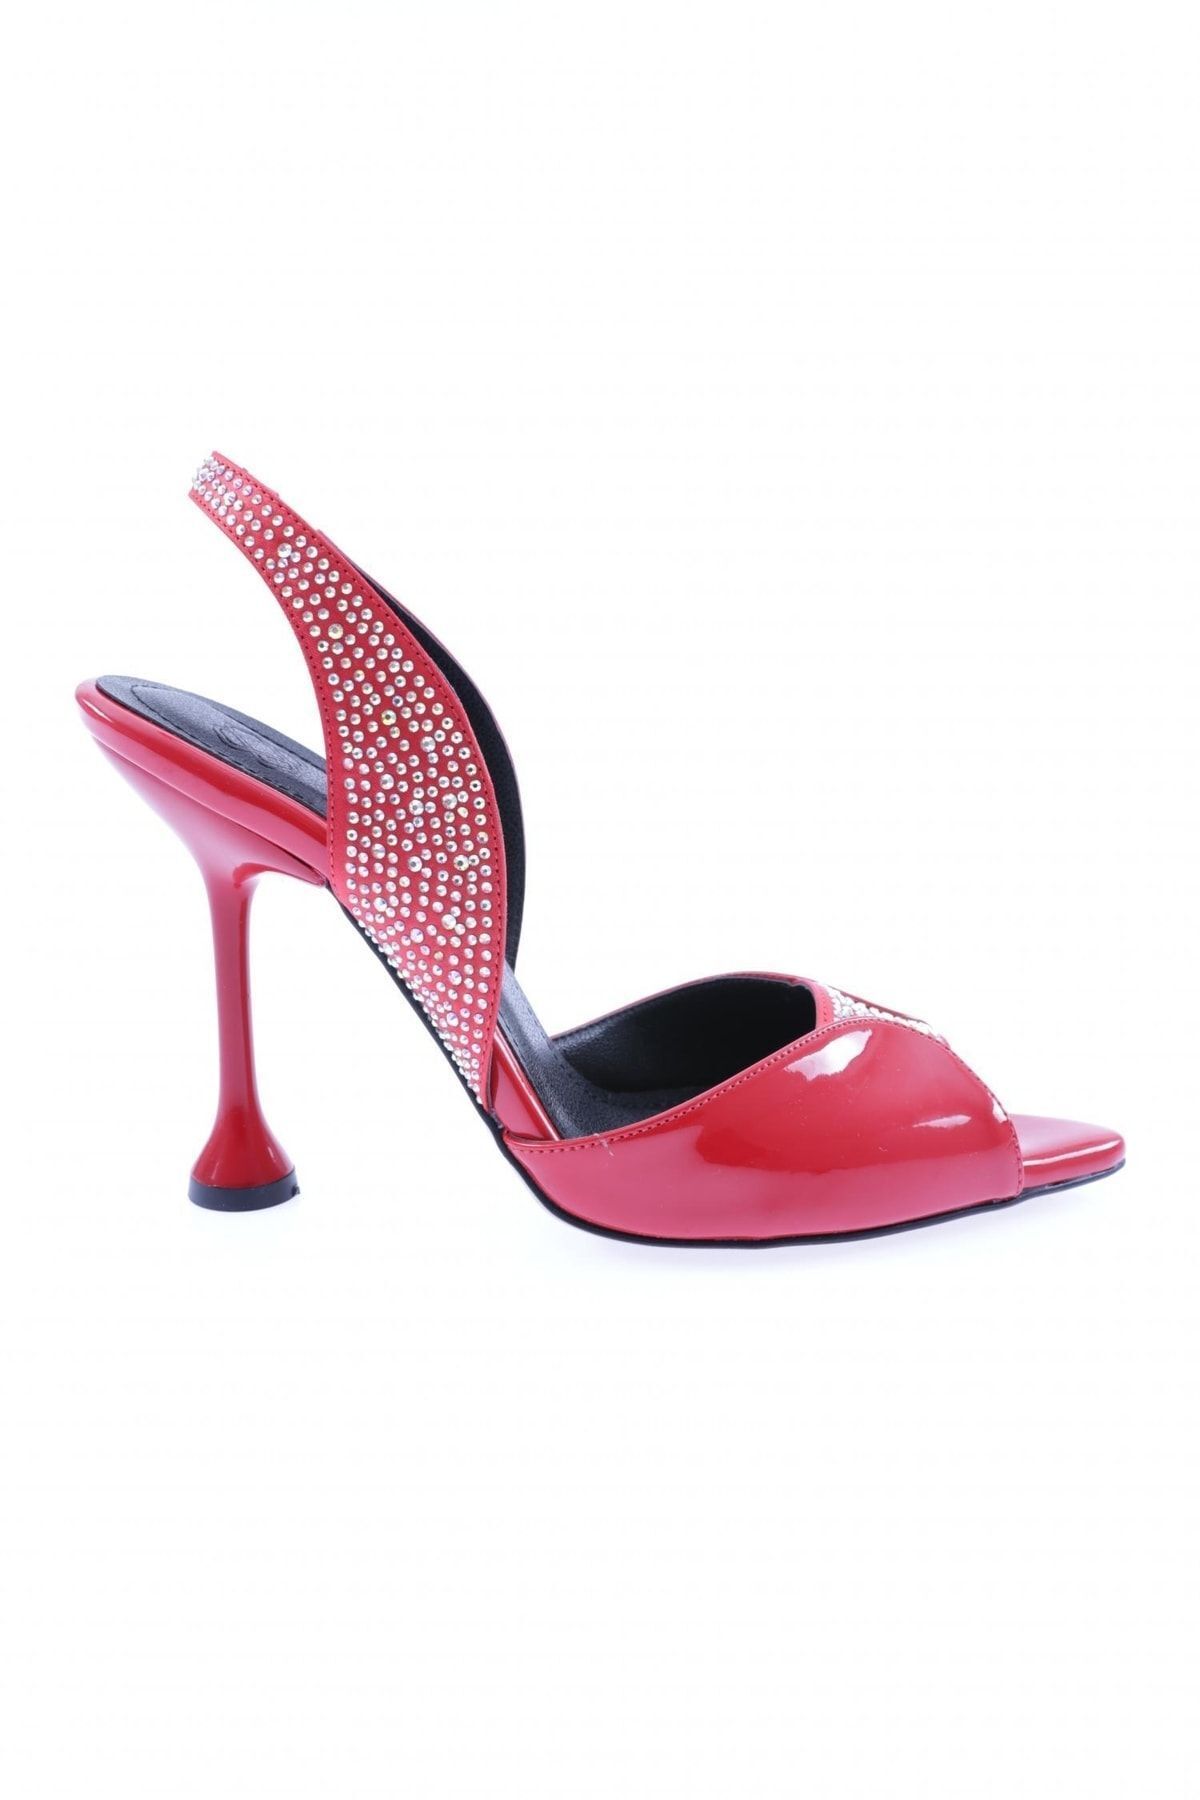 Dgn 02-23y Kadın Silver Taşlı Kadeh Topuklu Ayakkabı Kırmızı Rugan